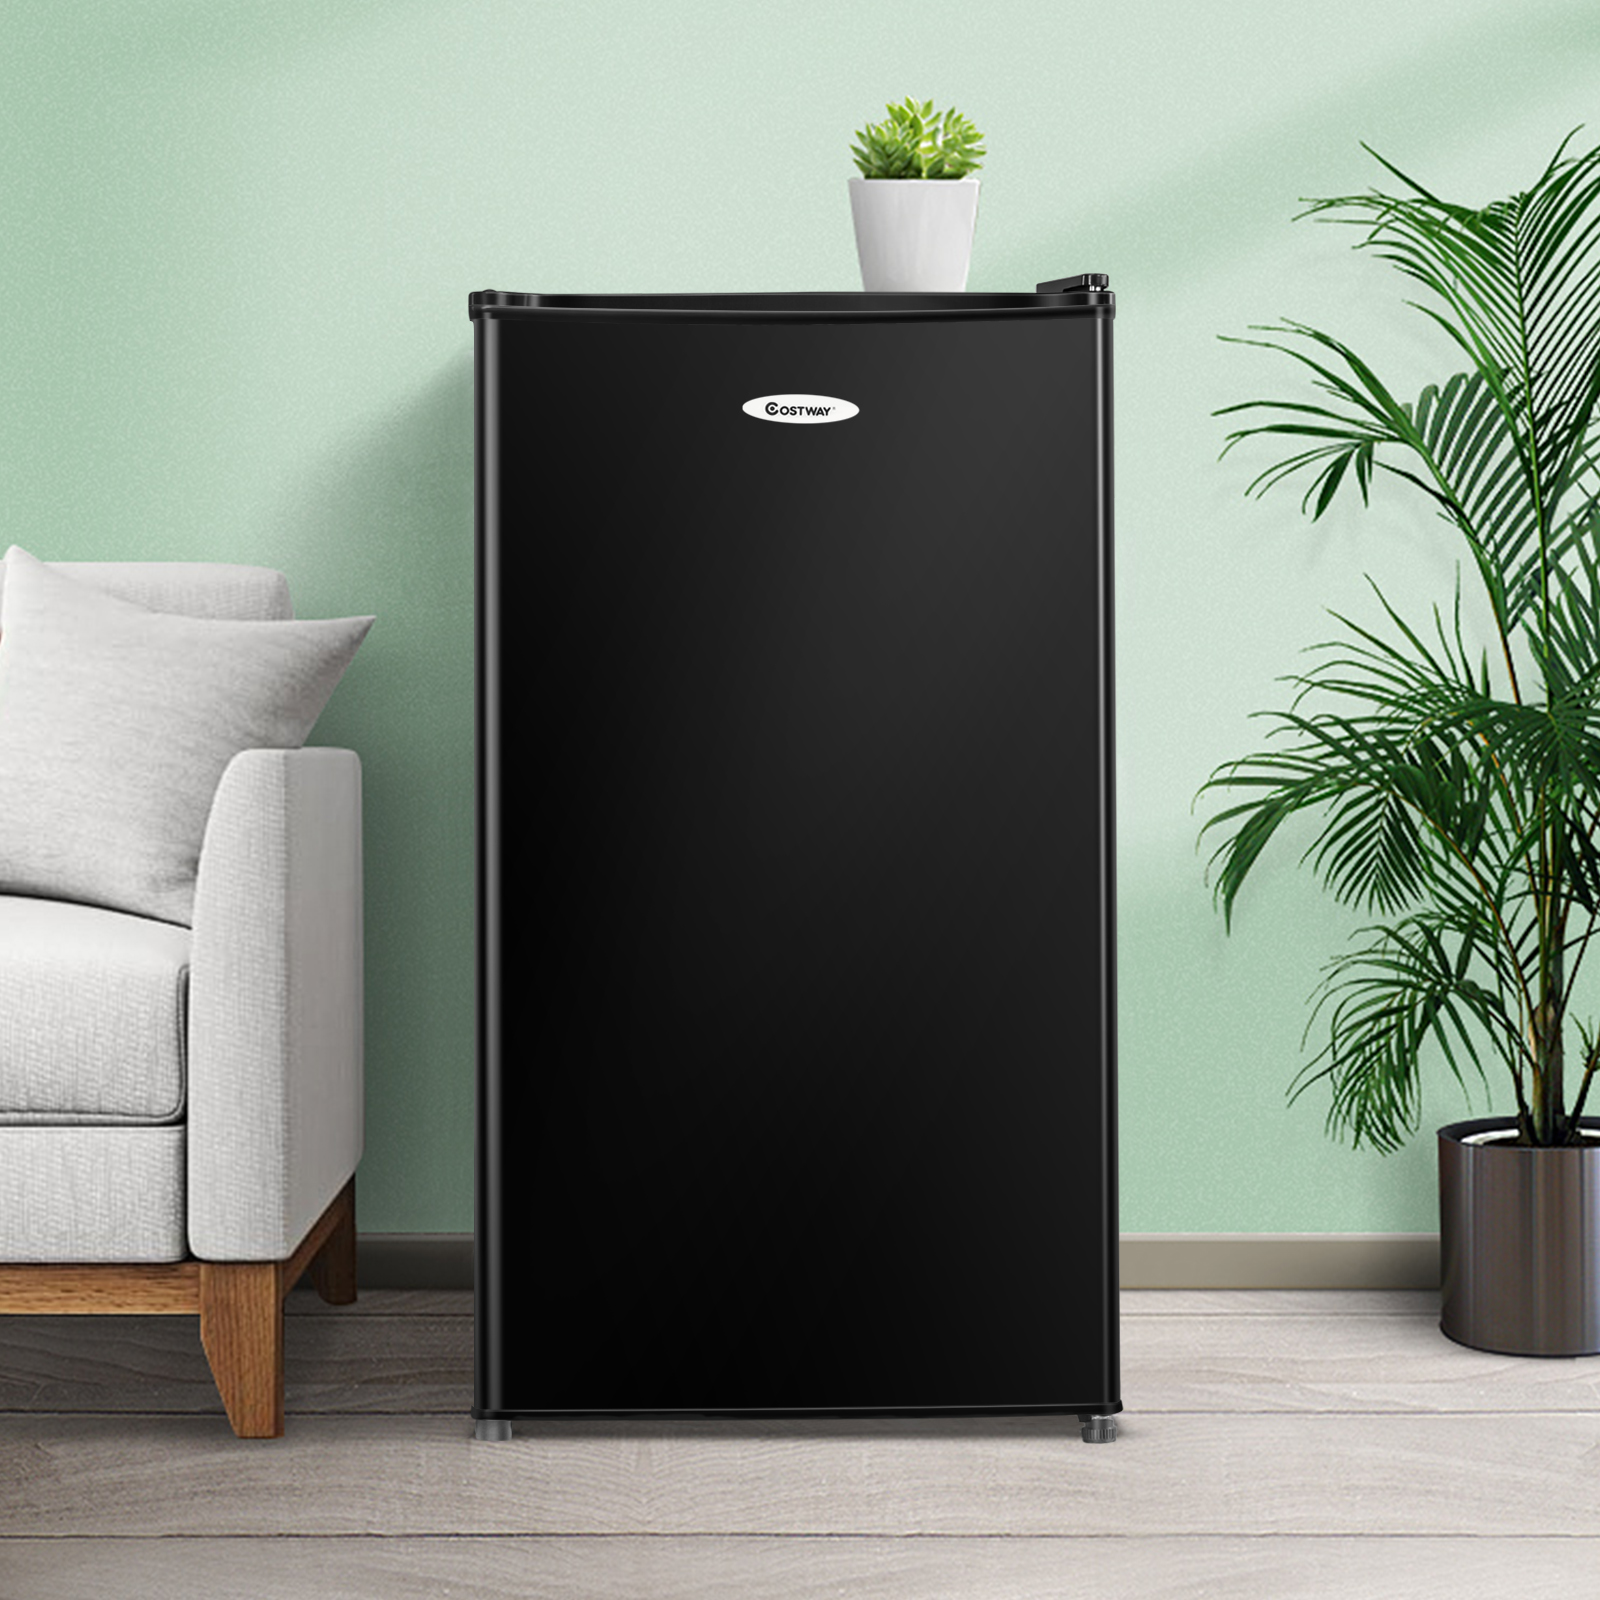 Compacte drank koelkast mini koelkast met verstelbare verwijderbare planken regelbare temperatuur en